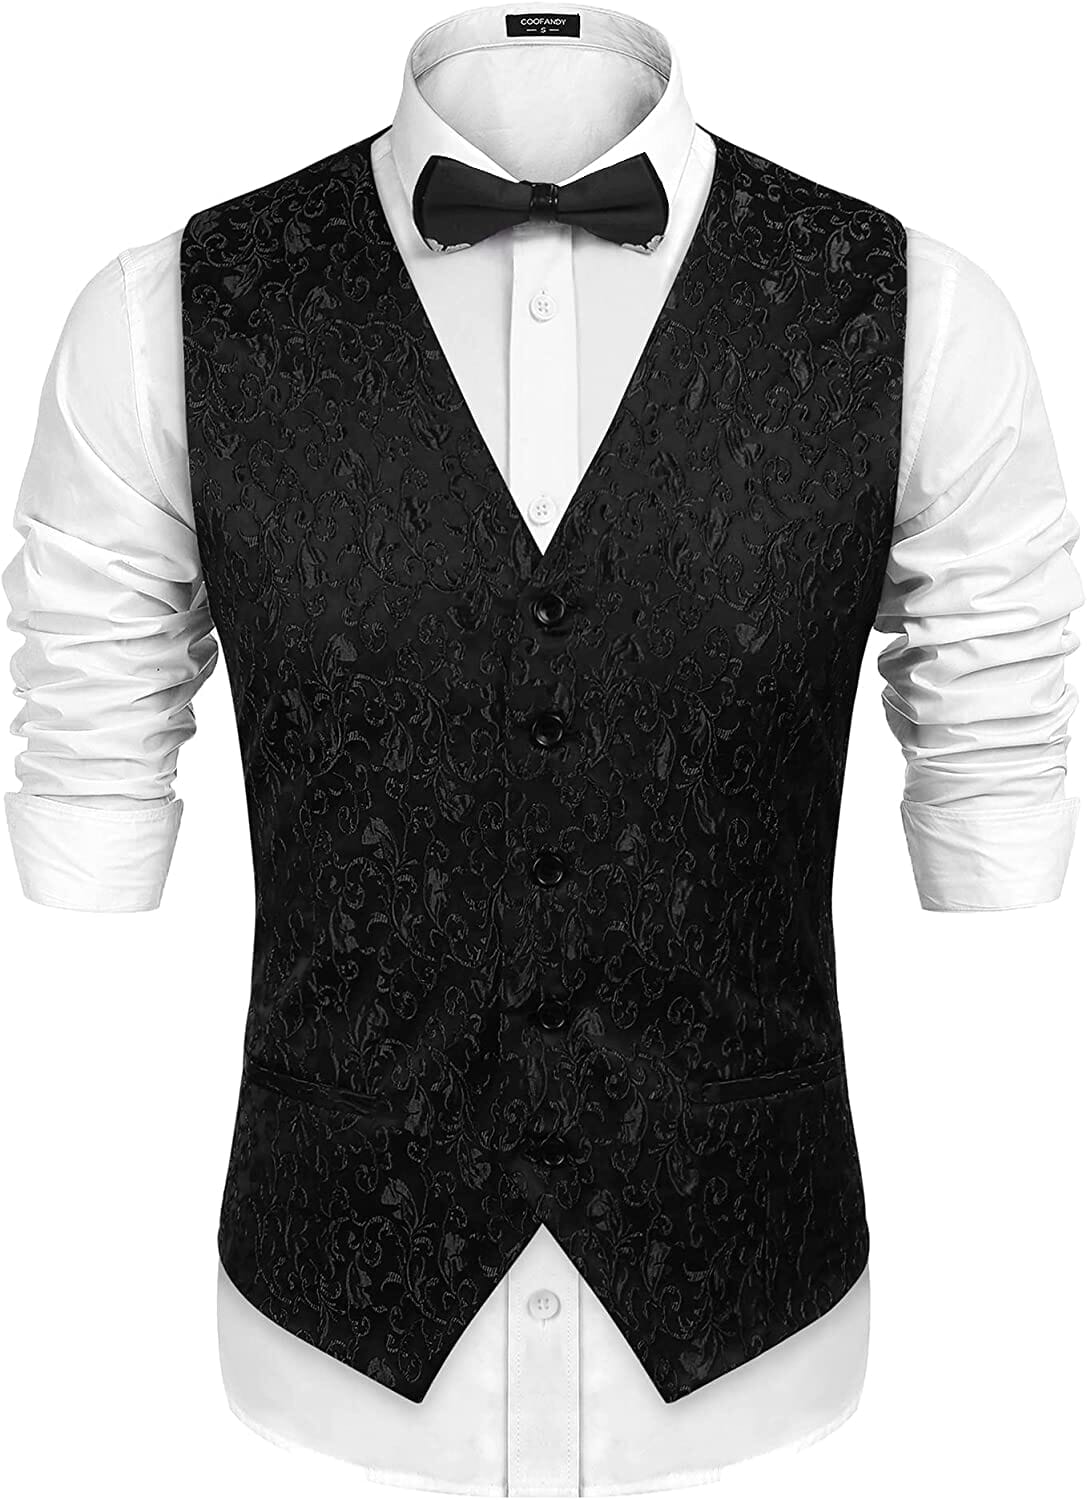 Floral Victorian Tuxedo Suit Vest (US Only) Vest COOFANDY Store Black Floral S 